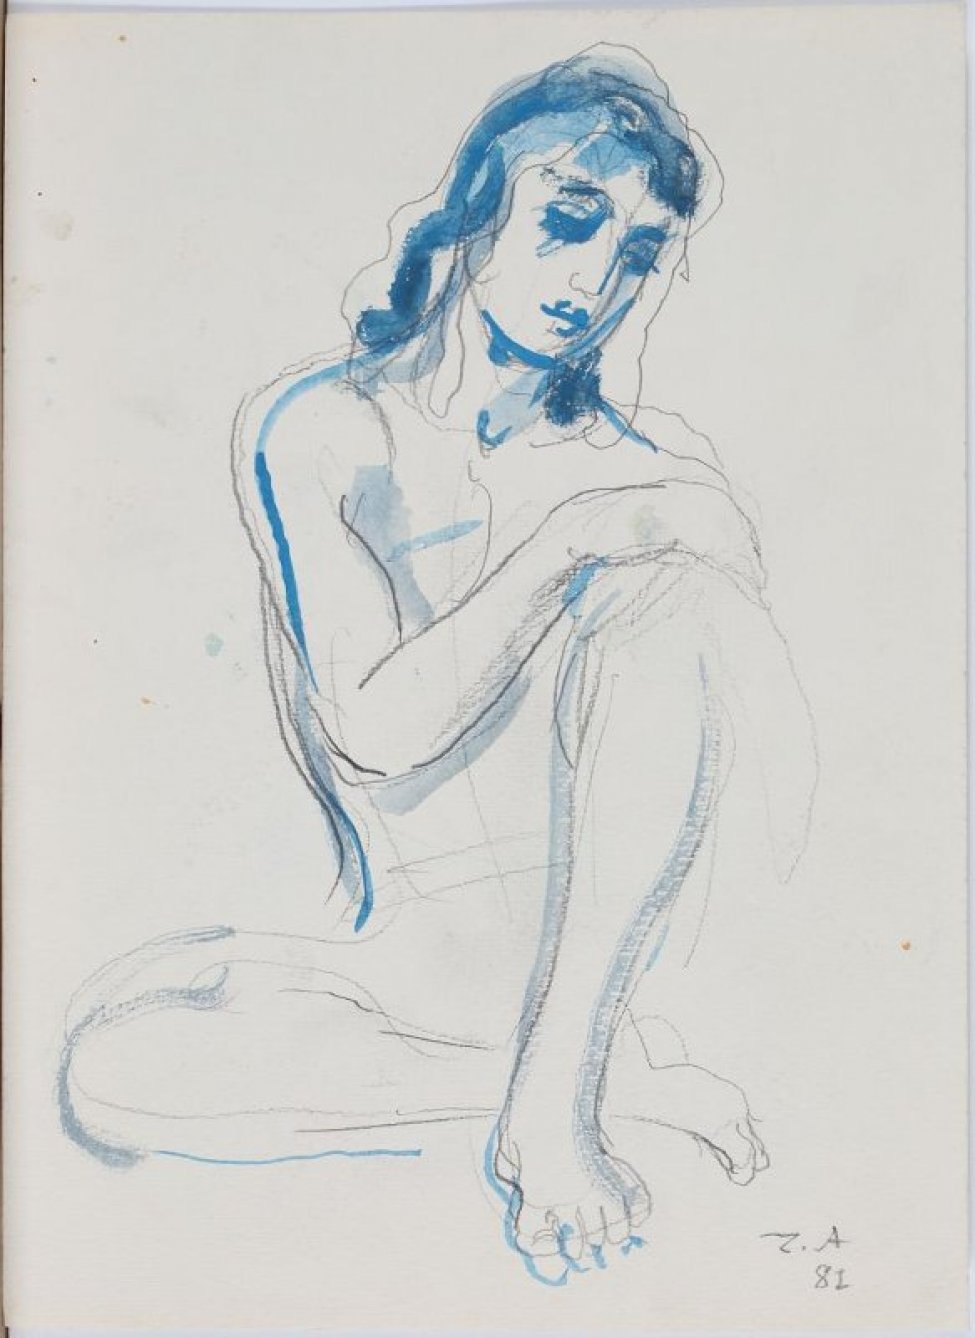 Изображена сидящая обнаженная молодая женщина с головой слегка склоненной вправо; левая нога согнутая в колене лежит, на правую ногу опирается руками.